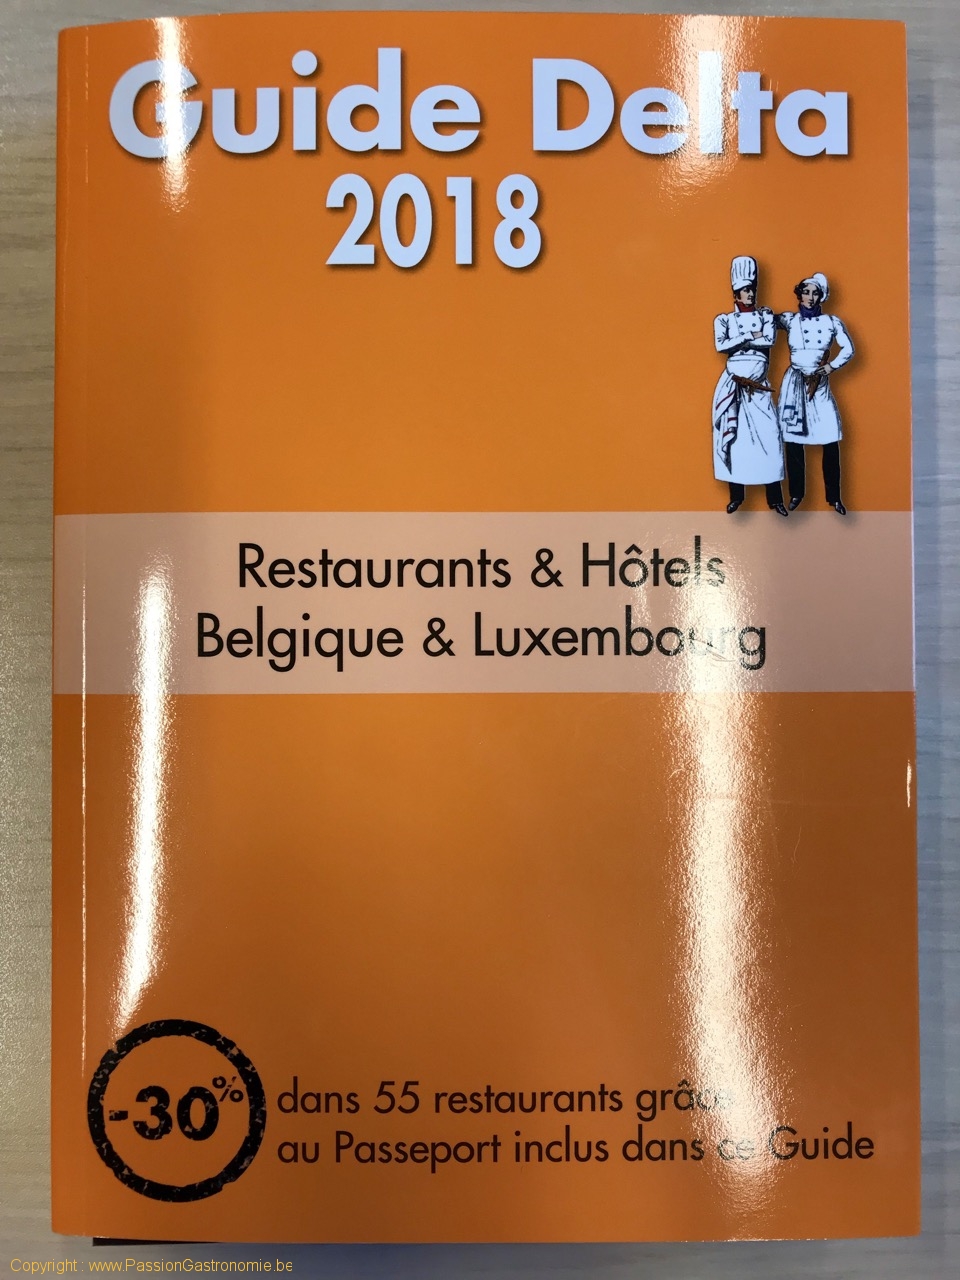 Guide Delta restaurants 2018 - Le guide 2018 restaurants et hôtels Belgique et Luxembourg